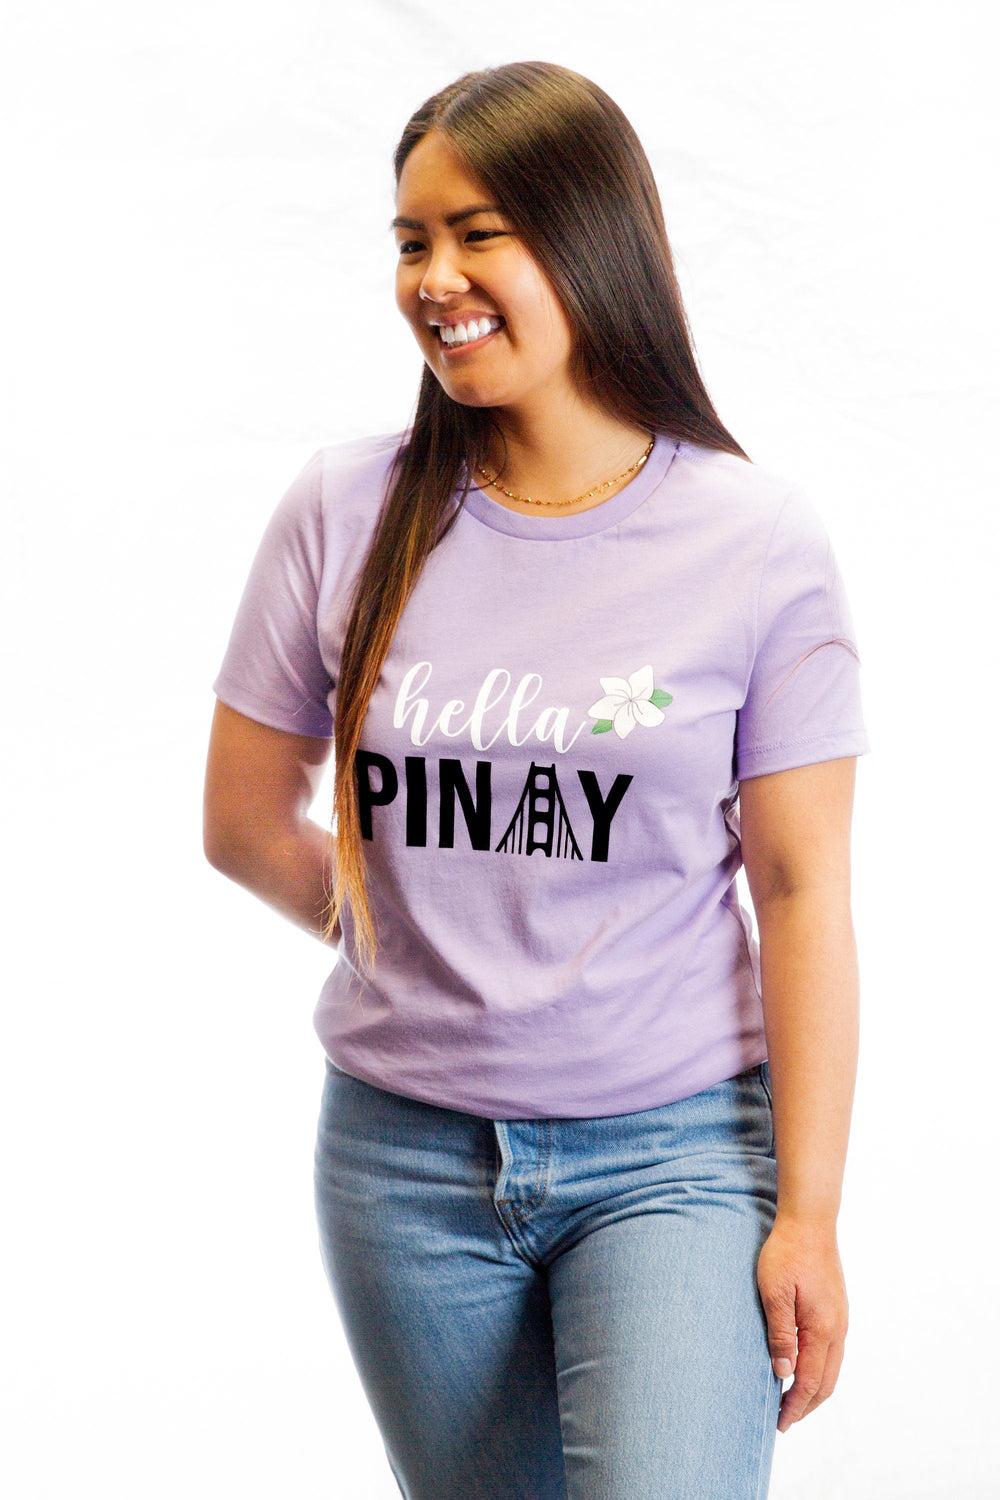 Hella Pinay T-Shirt, Filipina Shirts, Women's Relaxed Fit Tee, Pinay T-Shirts, Filipina Apparels, Hella Pinay, Filipina, Sampaguita T-Shirt